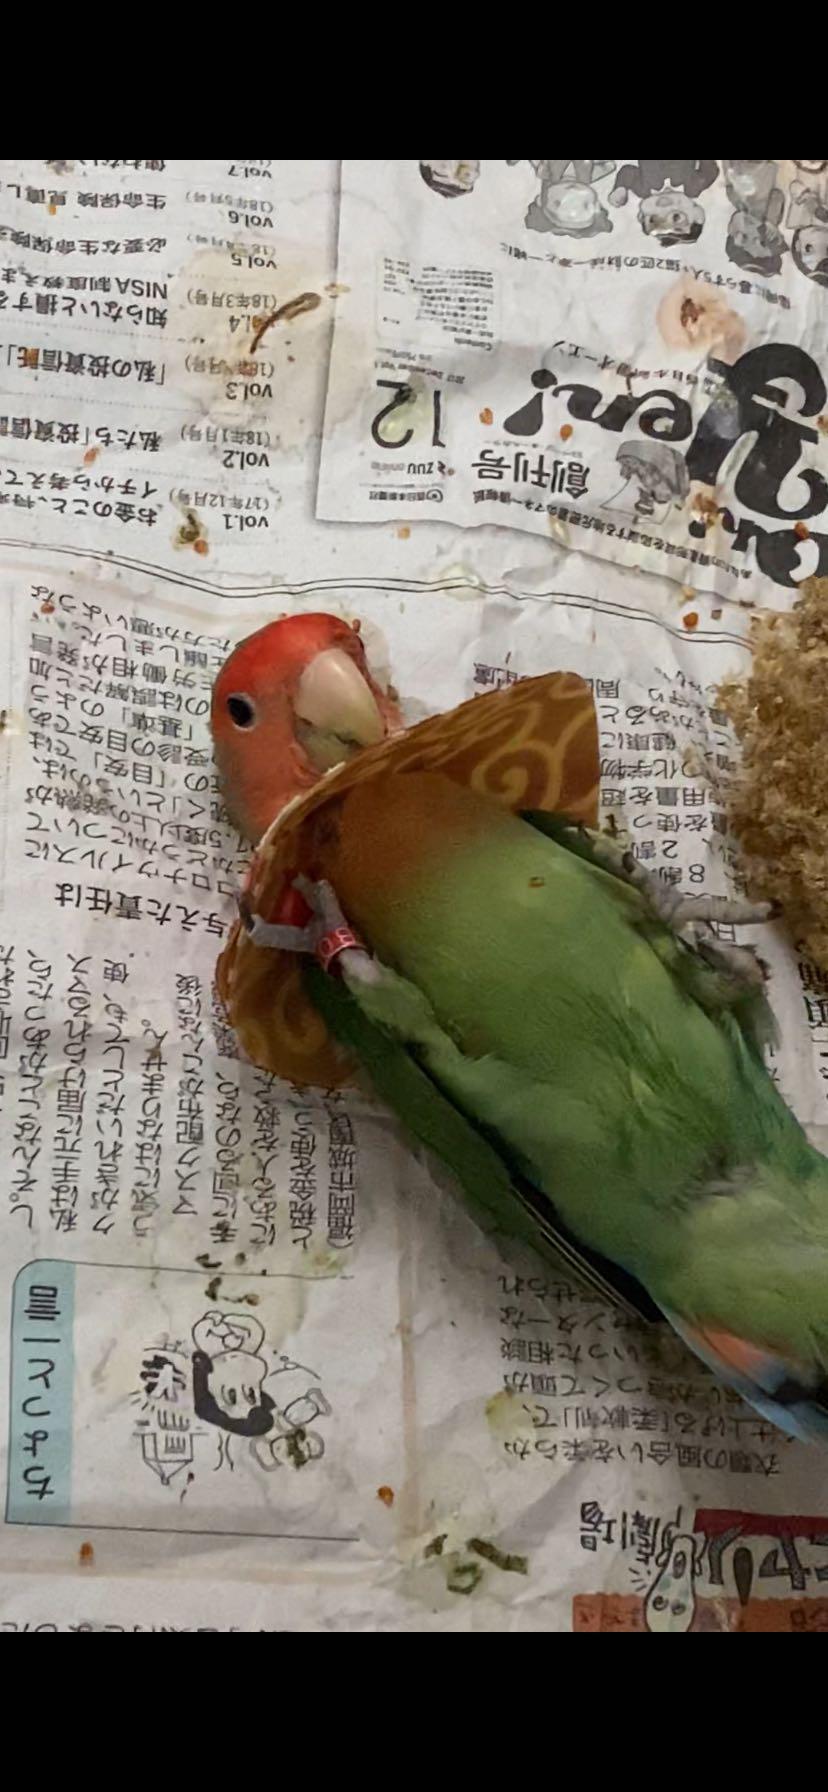 鳥 エリザベスカラー(唐草模様) 1枚・3サイズ・緑・赤・4g :reiwa201901:エリザベスカラー専門店ぴーちく工房 - 通販 -  Yahoo!ショッピング